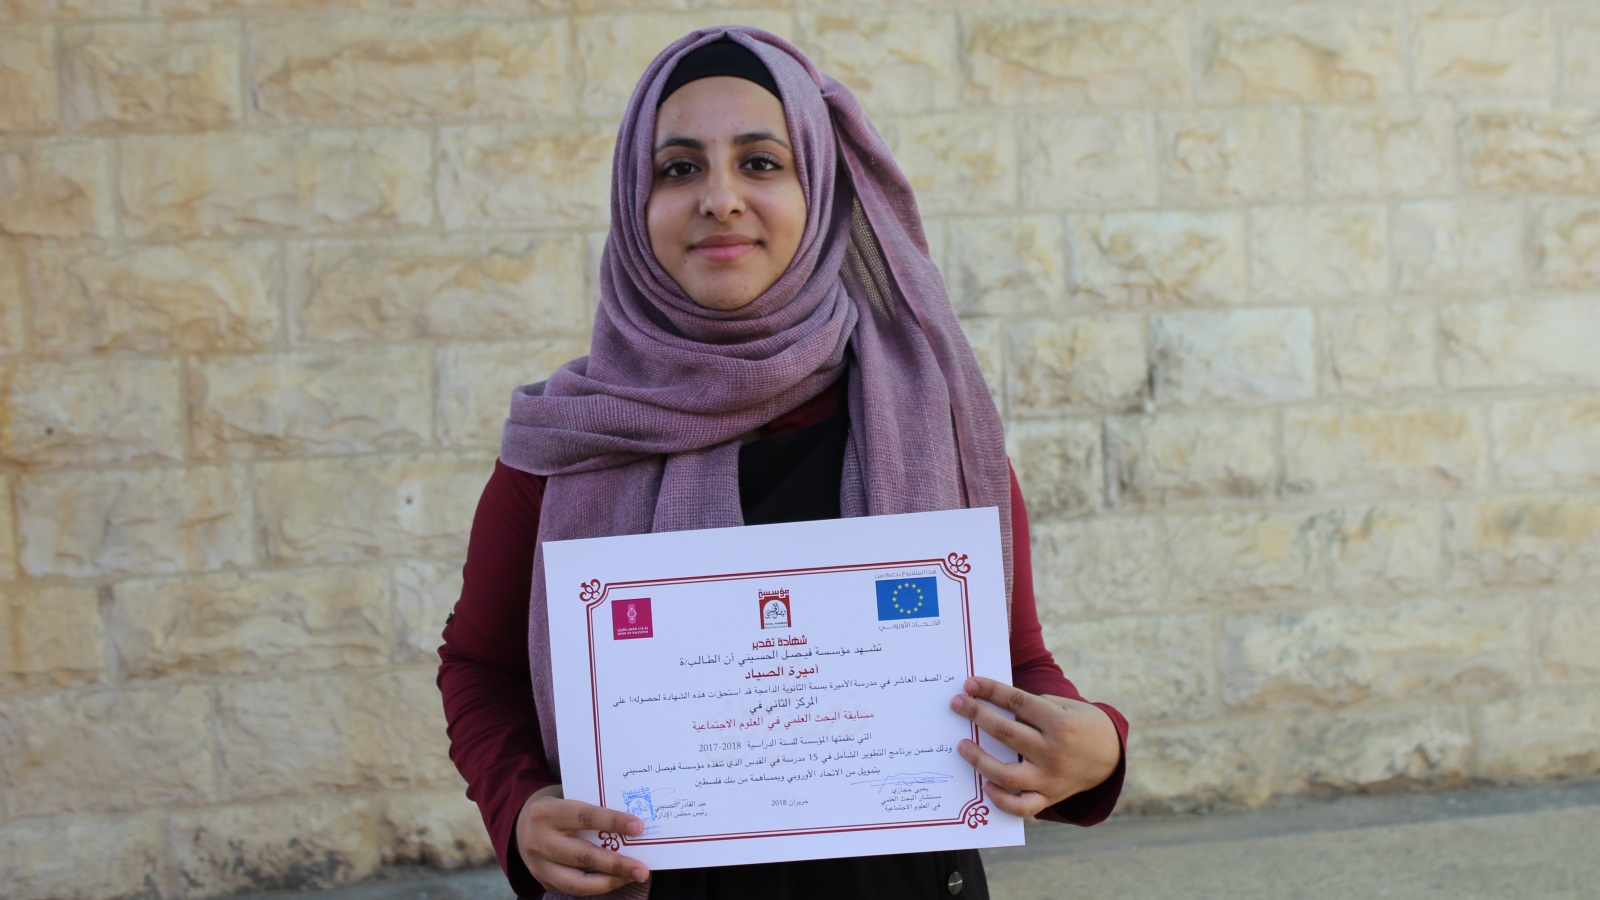 بحث للطالبة أميرة الصياد أظهر تقبل الطلبة الأصحاء لنظرائهم من ذوي الاحتياجات الخاصة (الجزيرة)